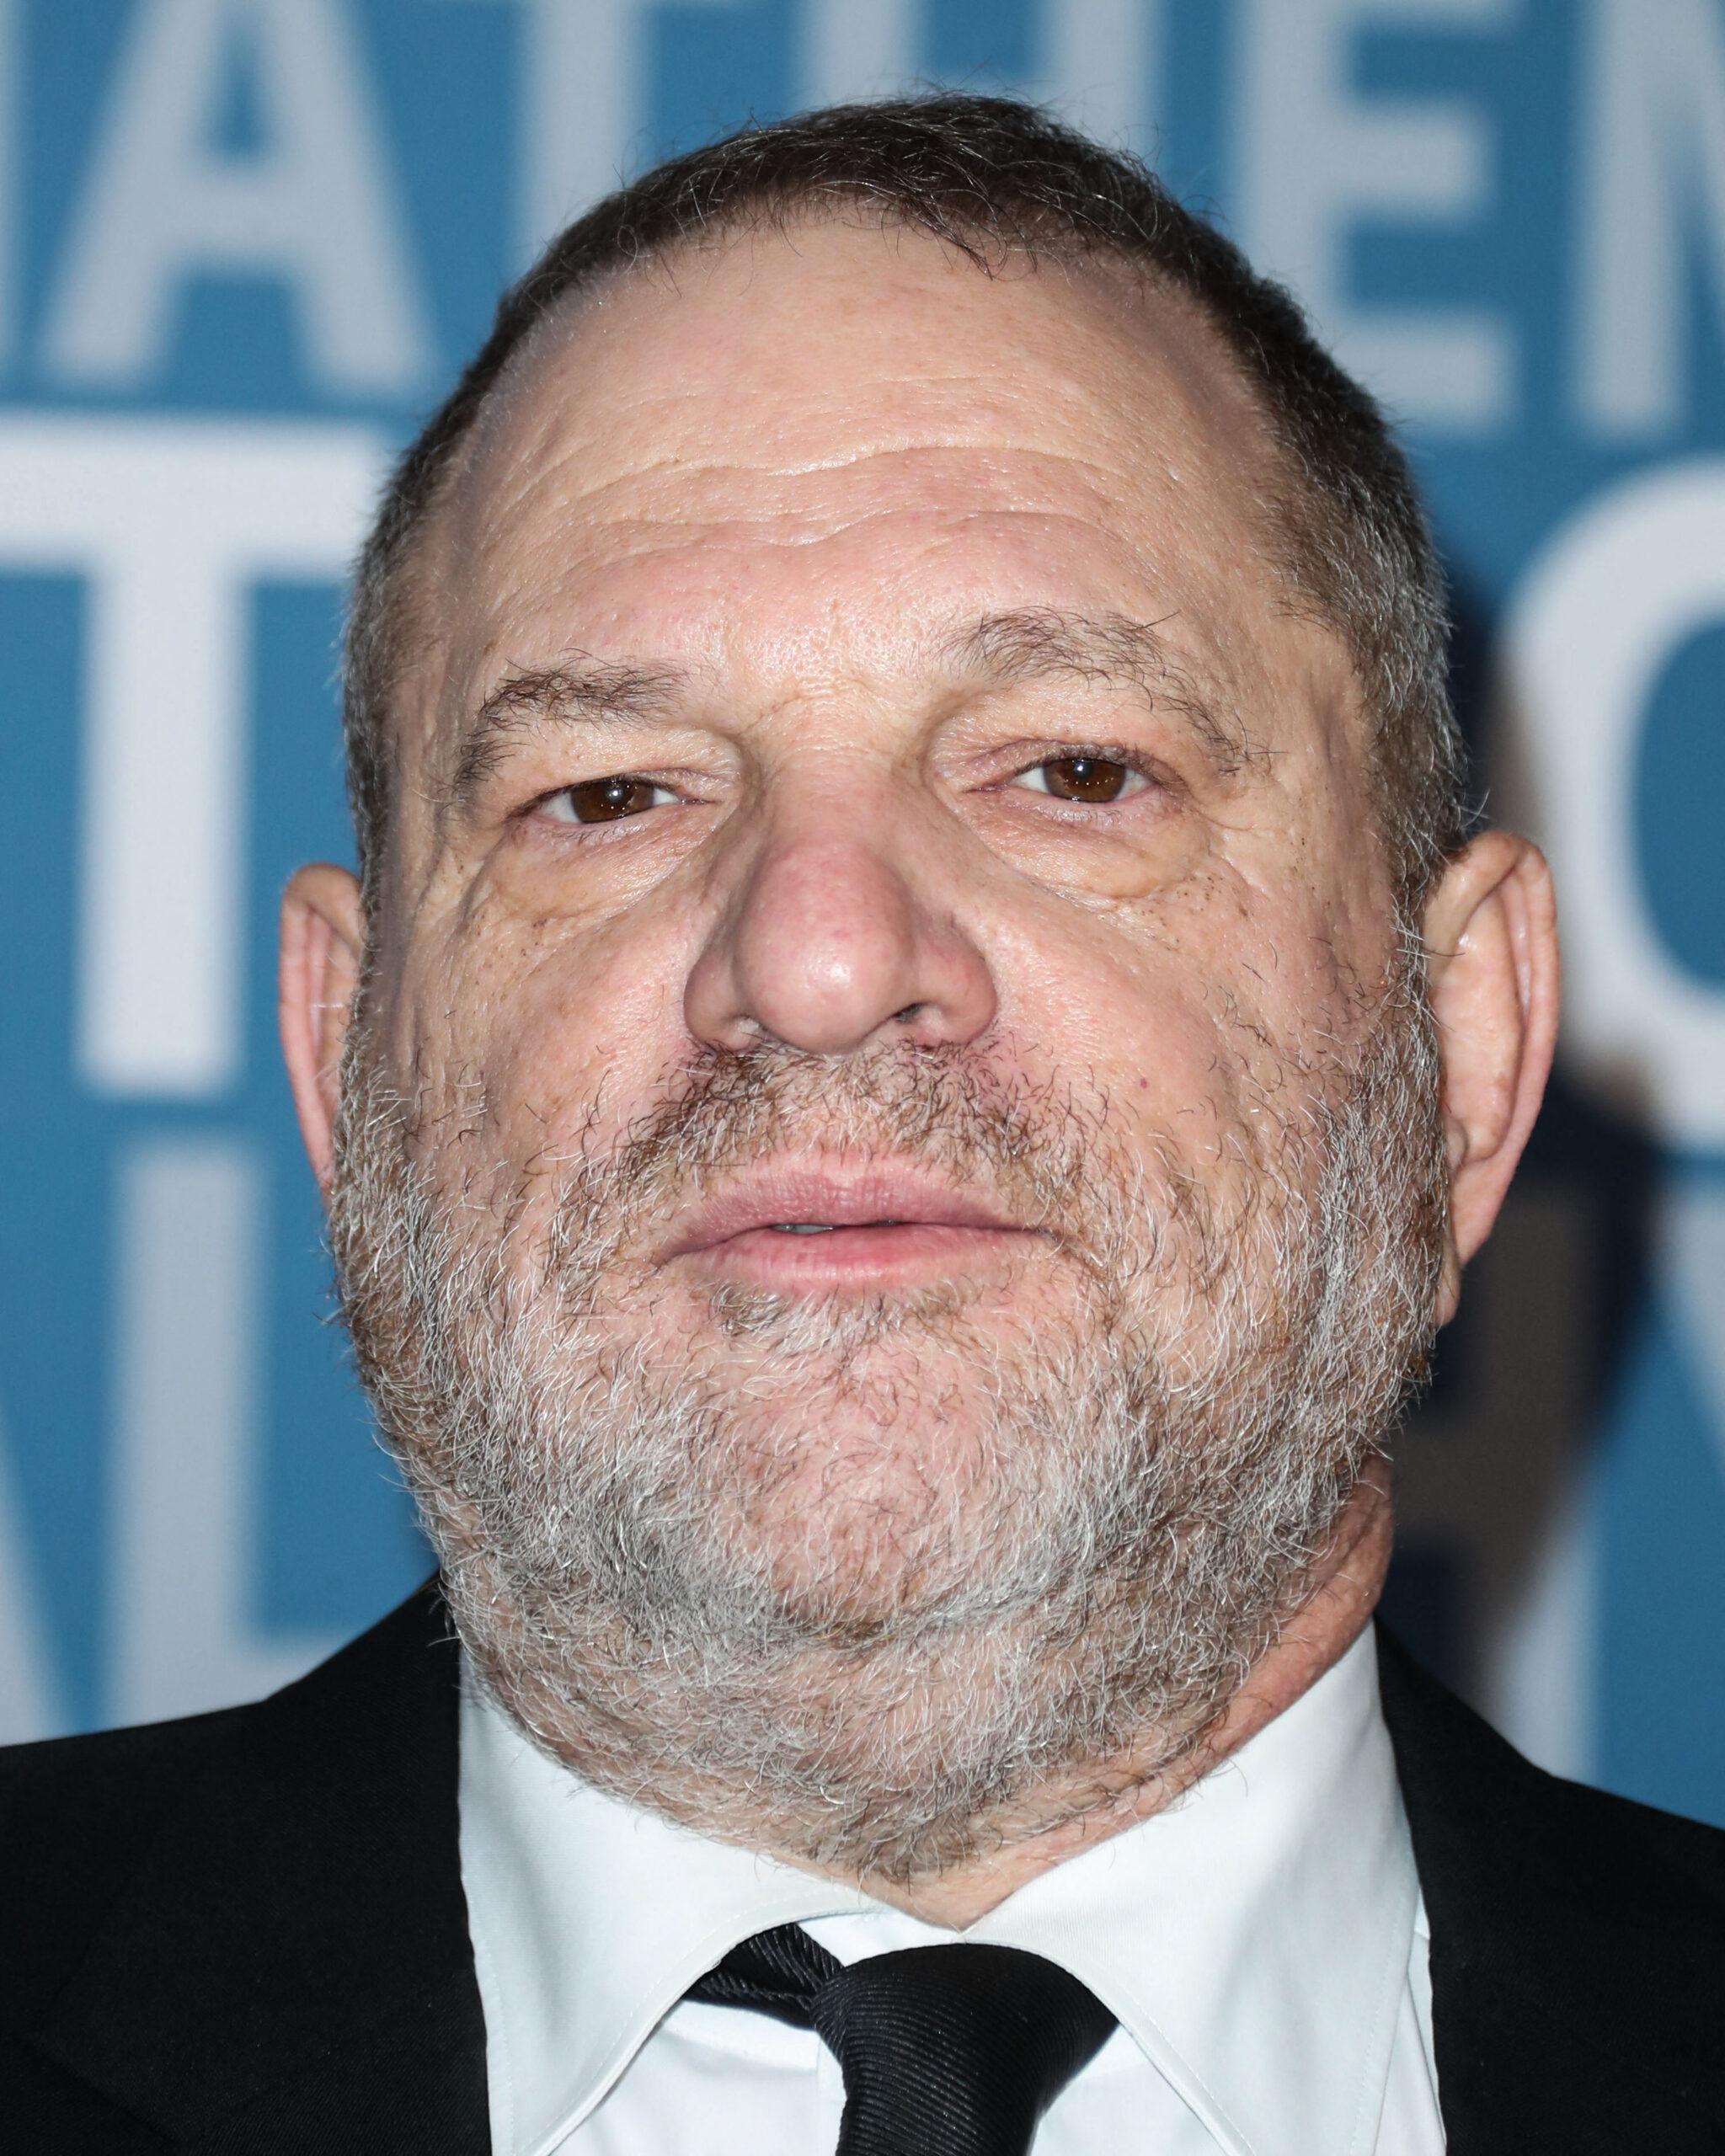 Harvey Weinstein Referenced In New Jeffrey Epstein Documents